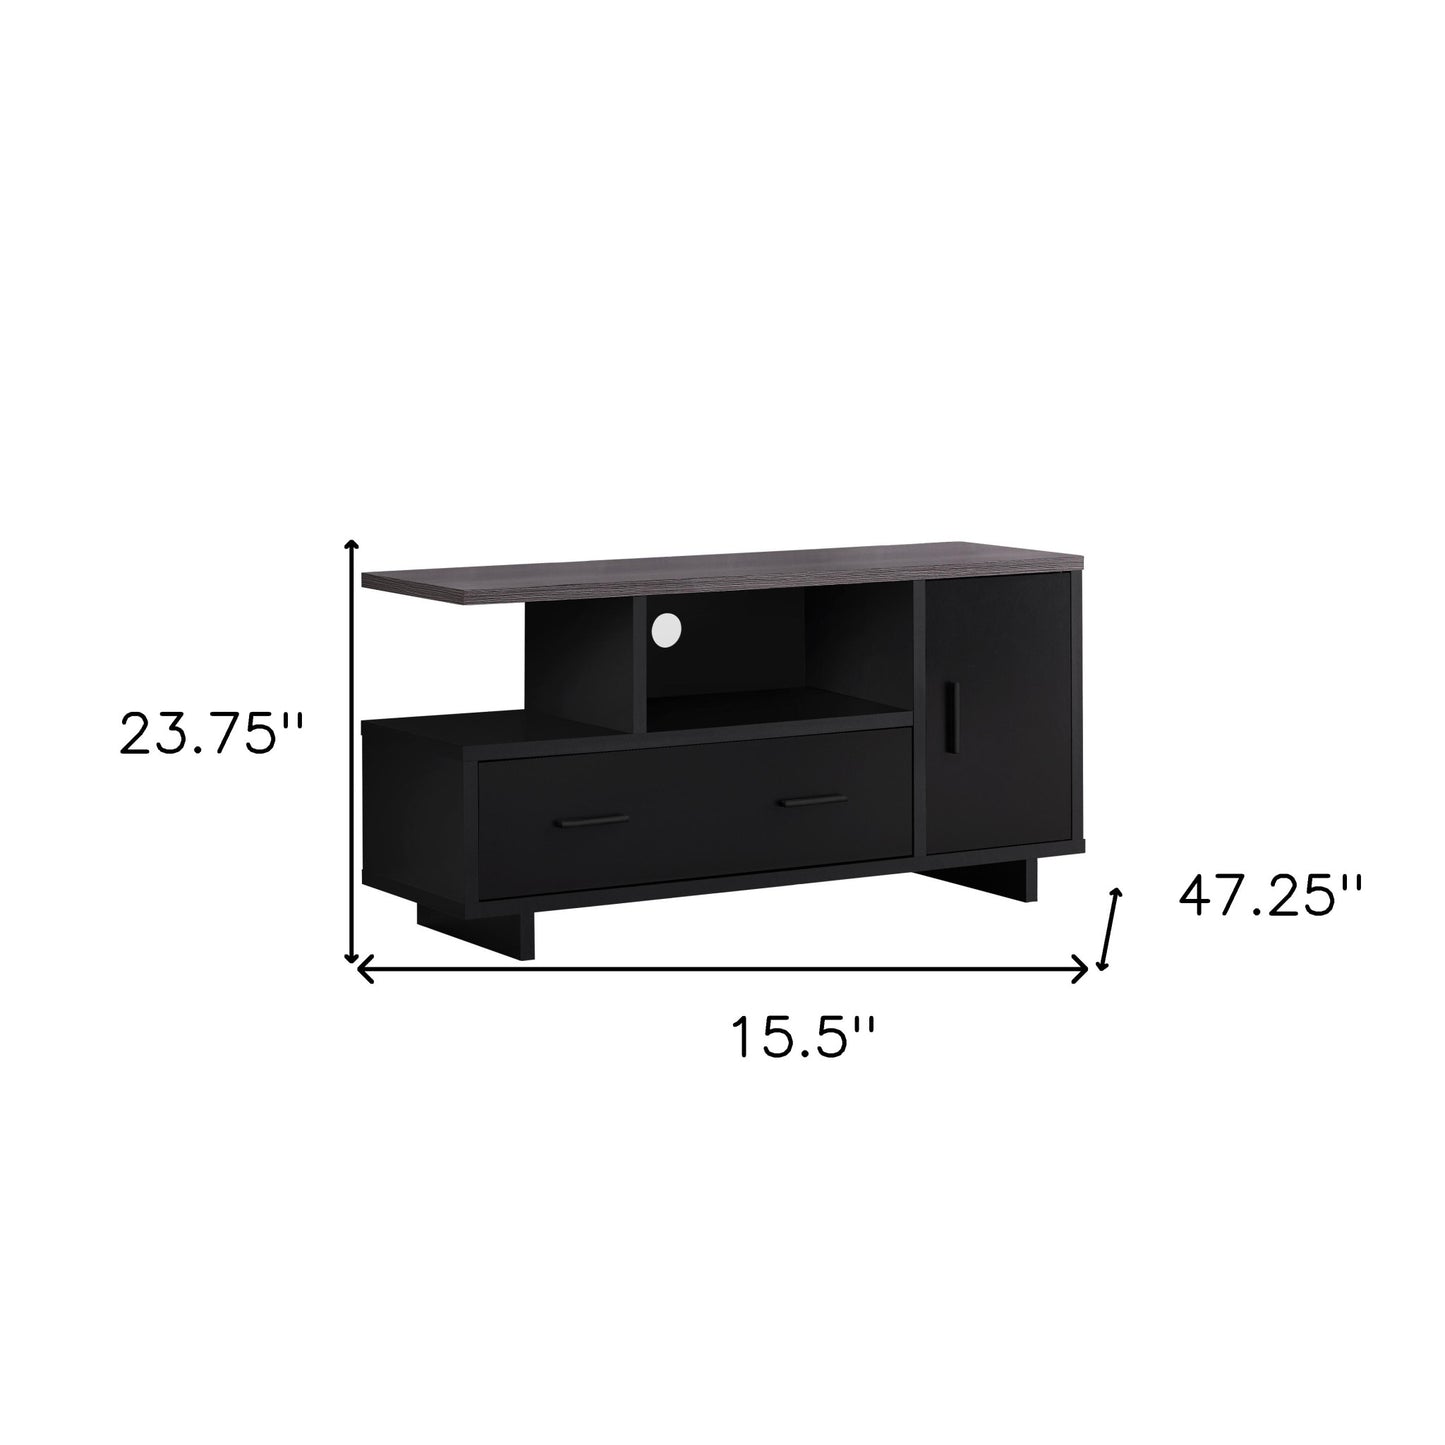 15.5" X 47.25" X 23.75" Blackgrey Top With Storage  TV Stand